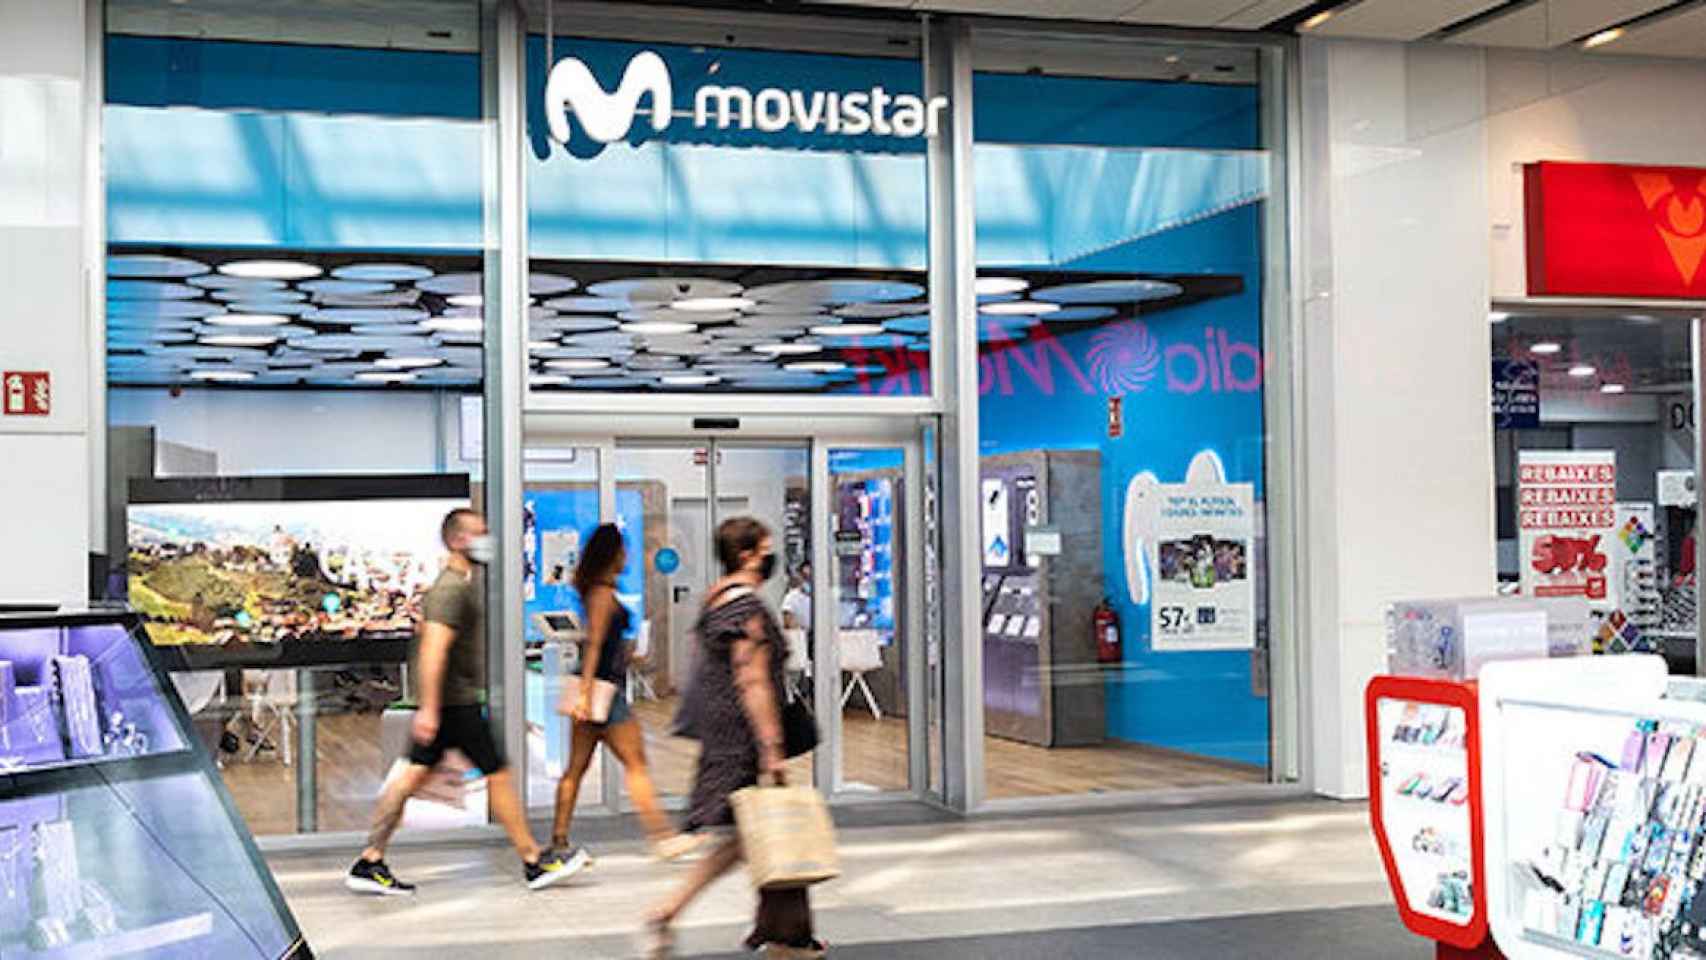 Tienda de Movistar en Barcelona / MOVISTAR